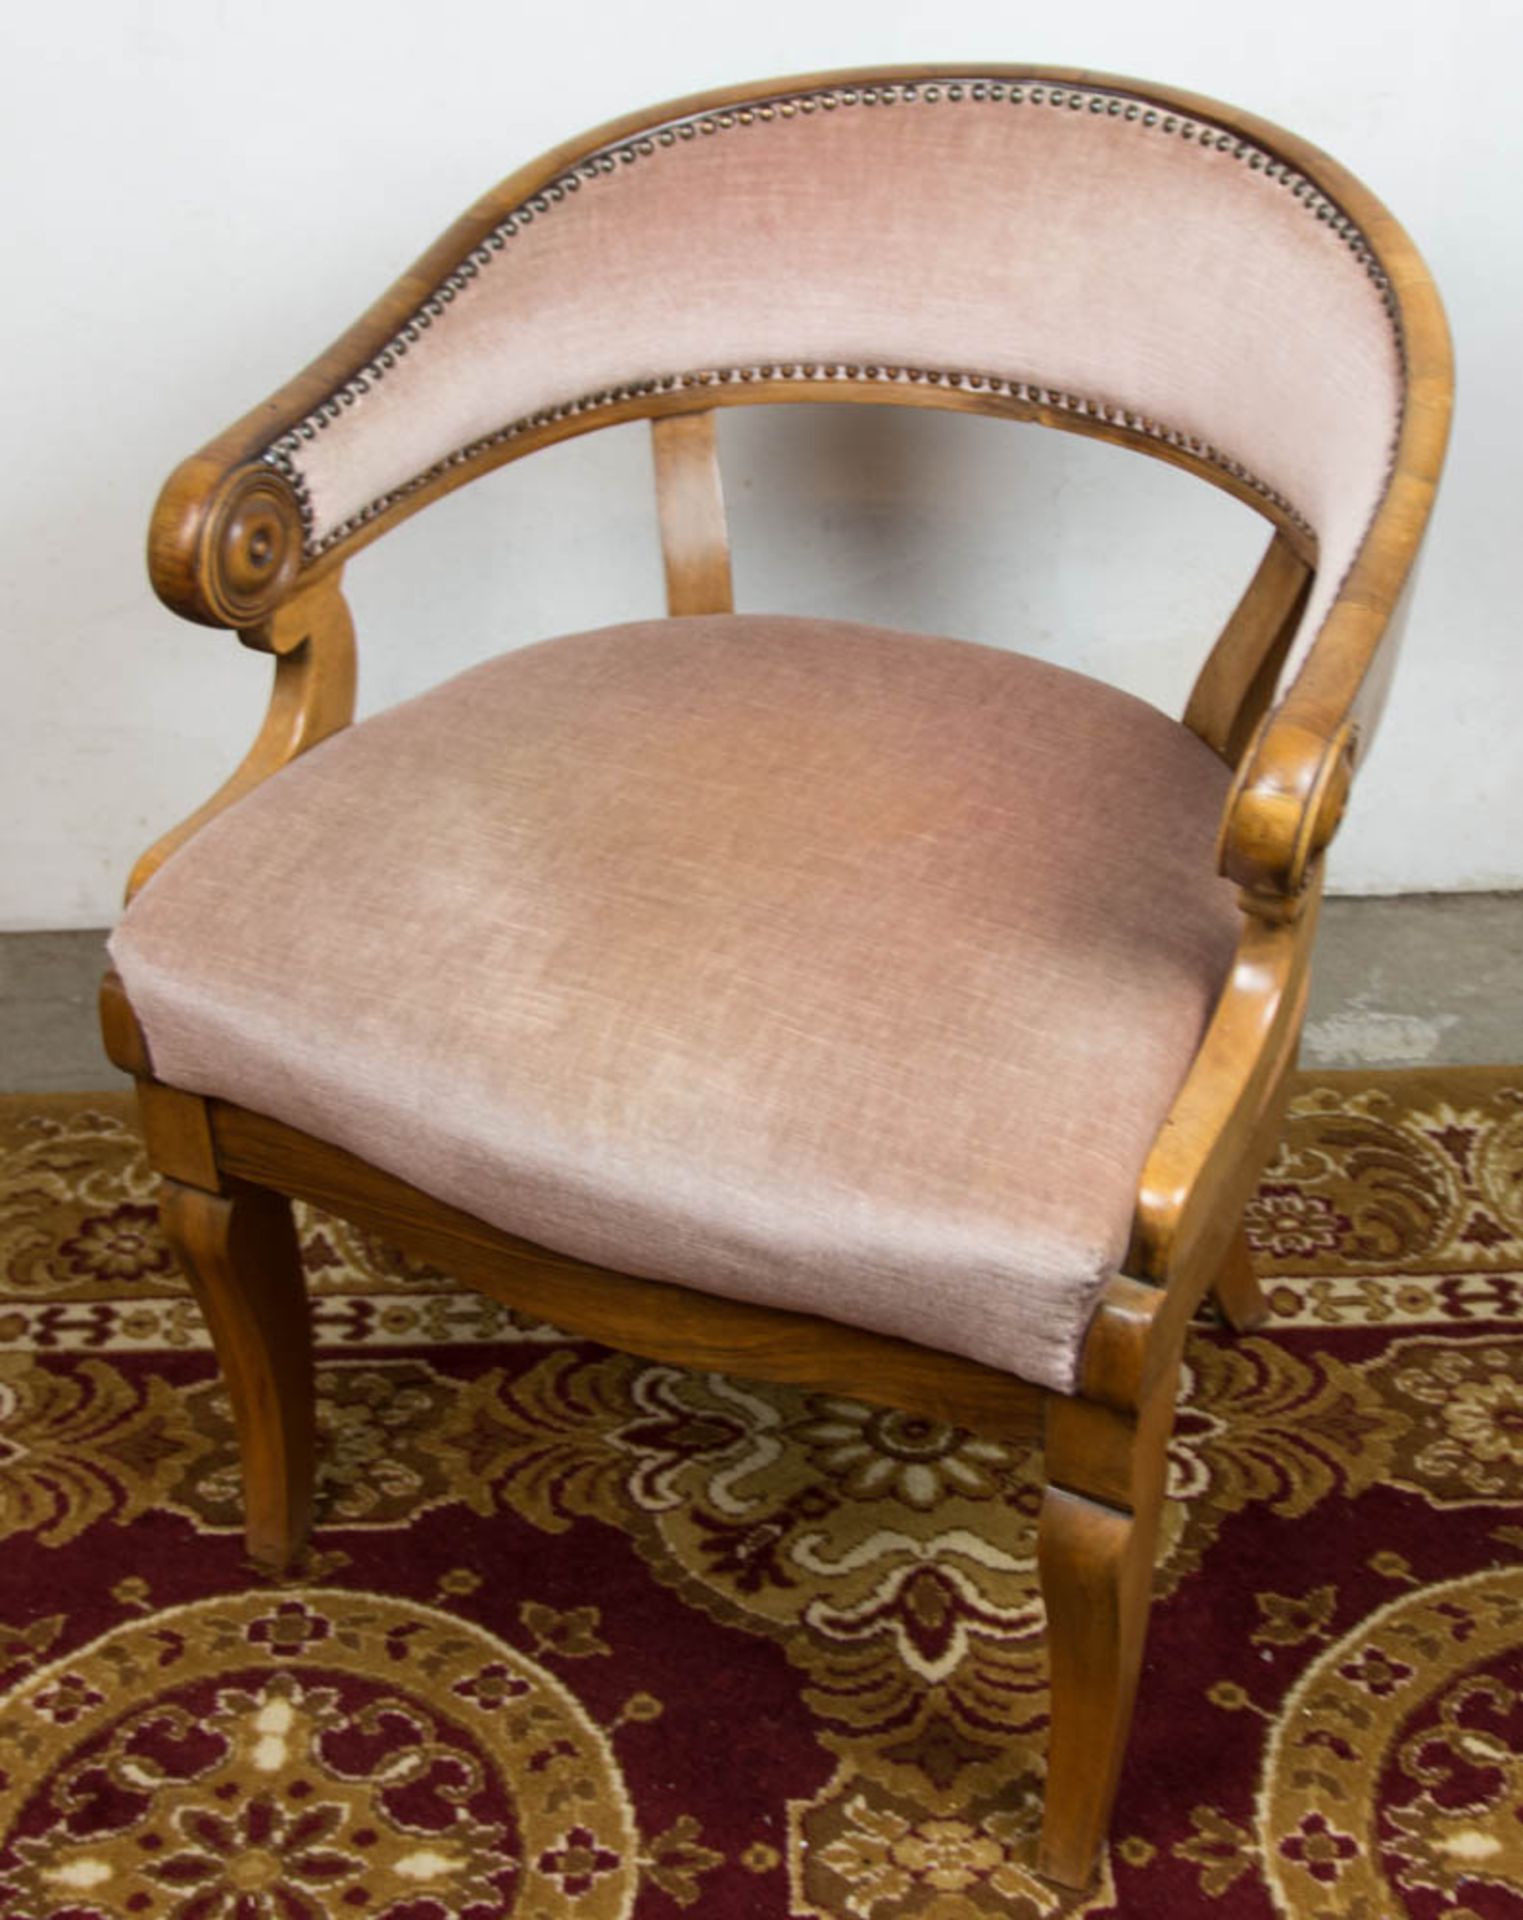 Aufsatzschreibtisch mit passendem Stuhl, Nussbaum, Süddeutschland, um 1900. - Bild 8 aus 21